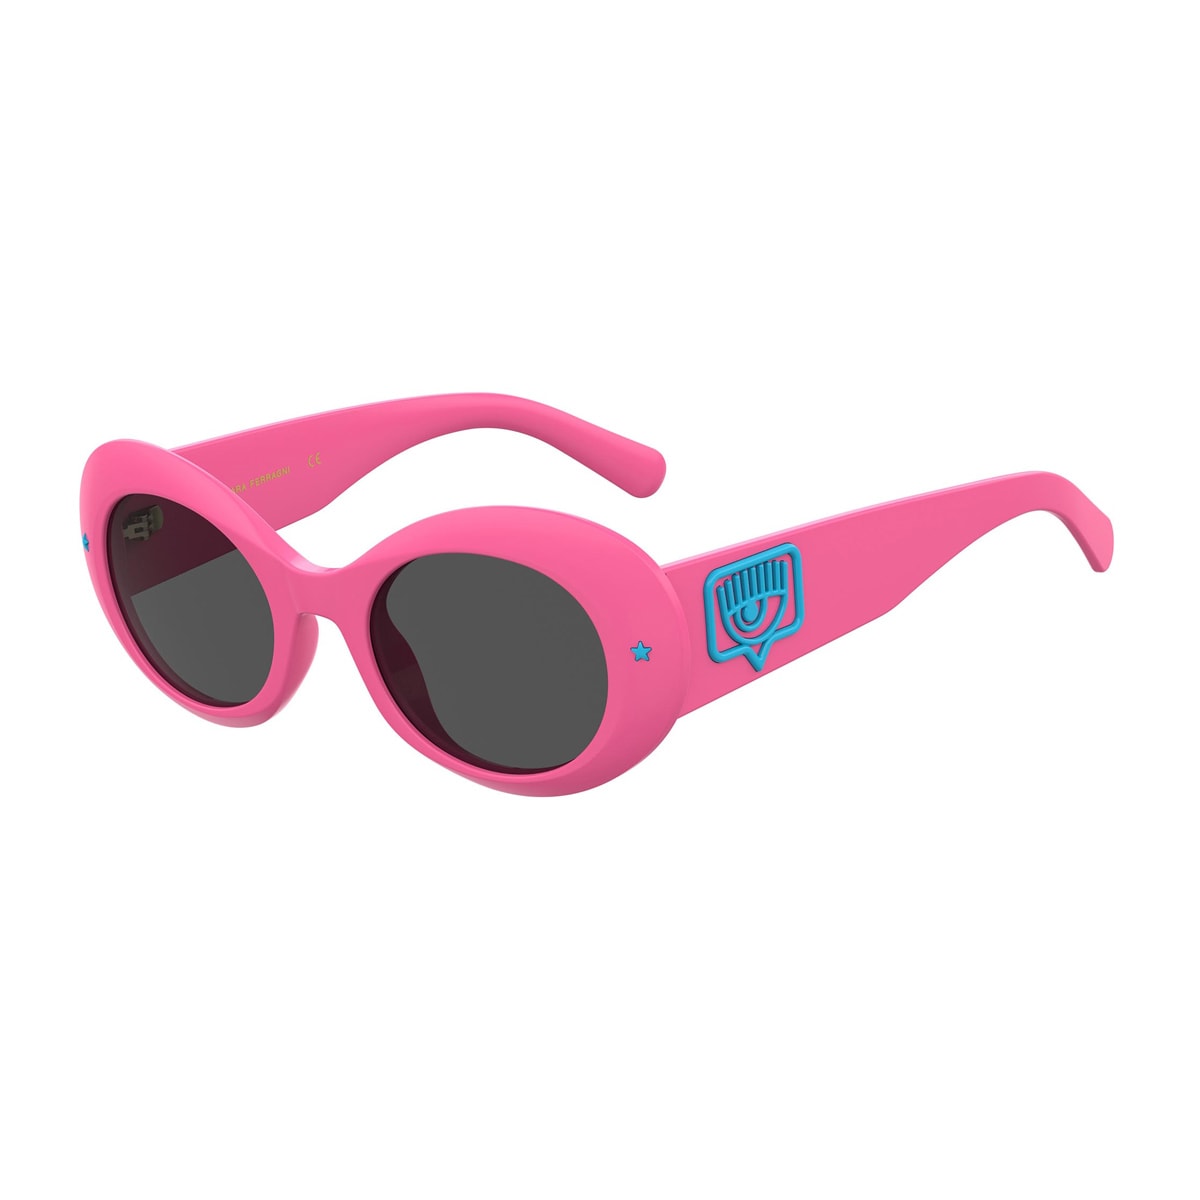 Cf 7004/s Sunglasses